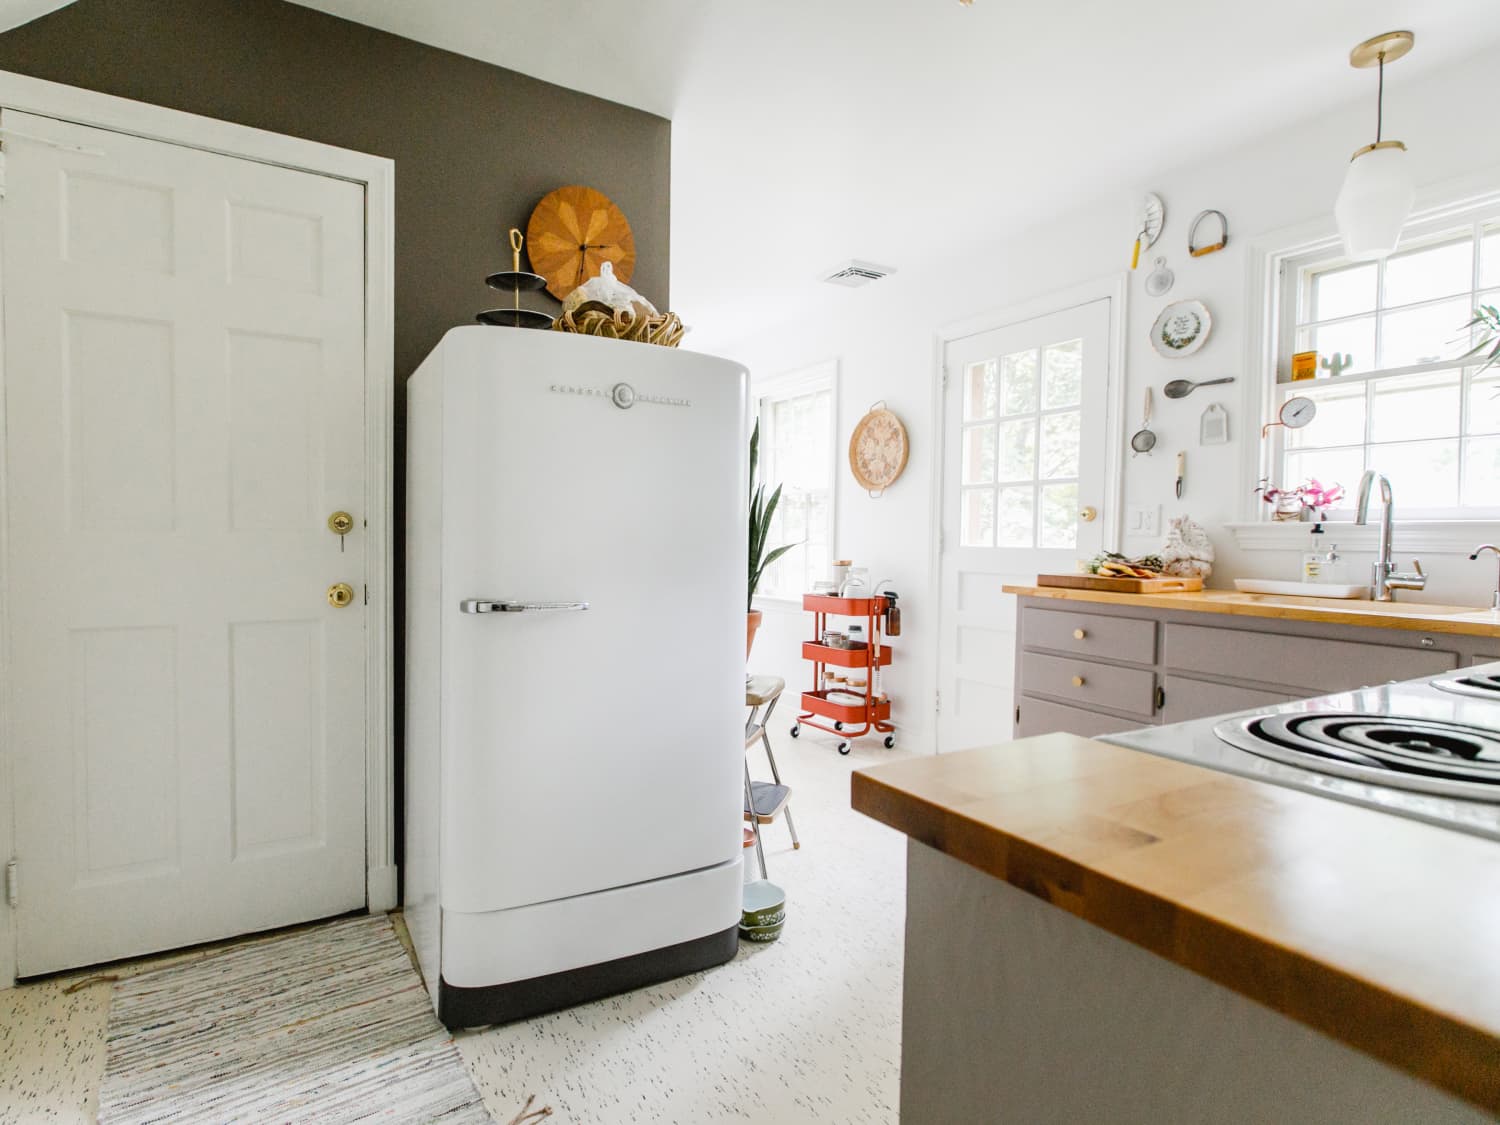 15 Retro Kitchen Appliances You'll Love - Cottage style de